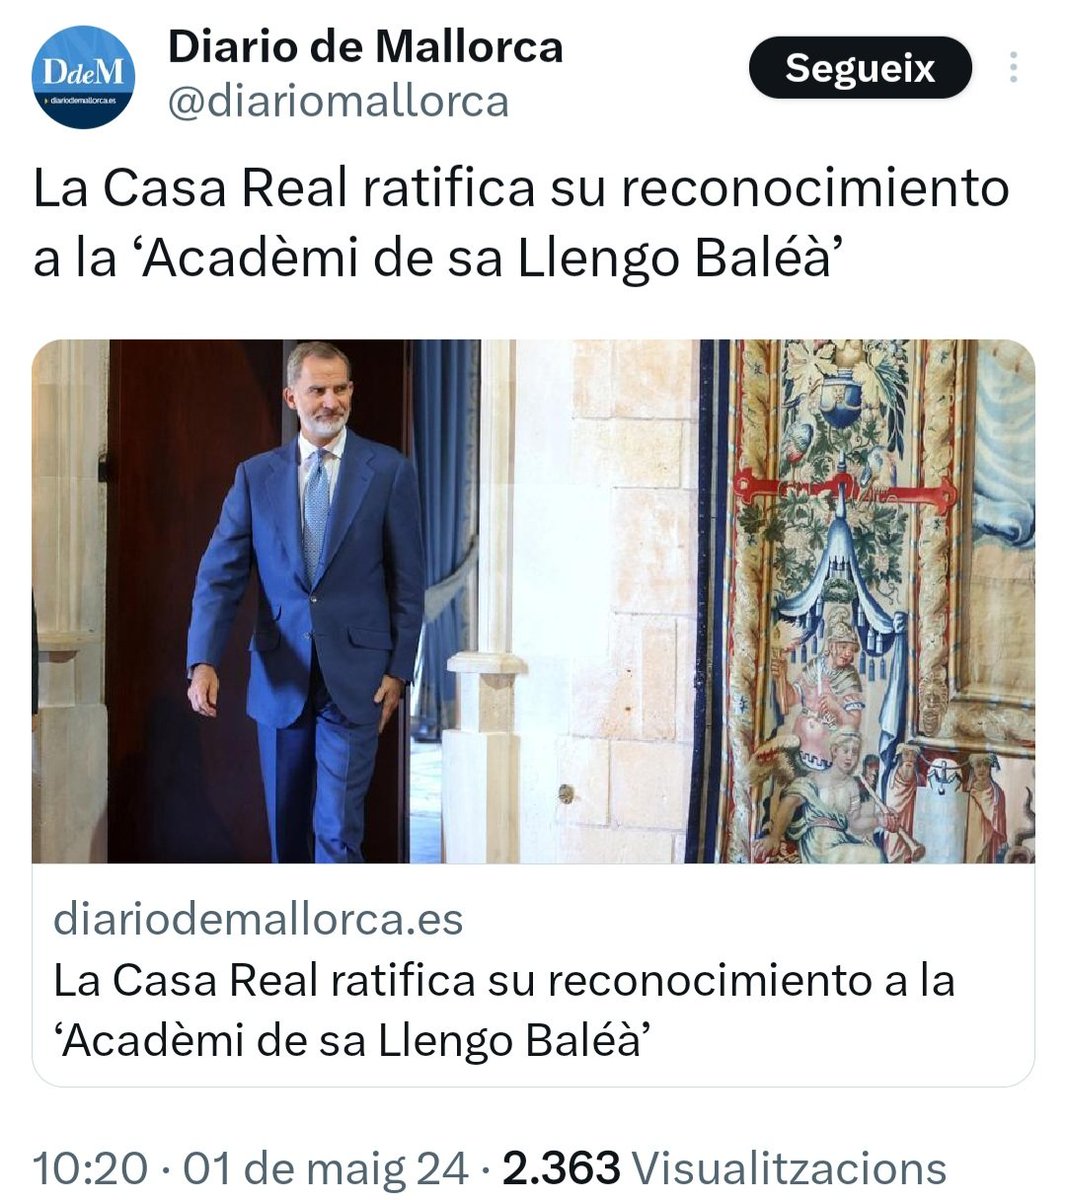 ¿Os imagináis a Felipe VI otorgando el título de 'Real' a la Academia del Terraplanismo? Pues esto tiene el mismo rigor científico y lo justifica el objetivo de destruir la lengua catalana. El sueño húmedo de los borbones y el nacionalismo español.